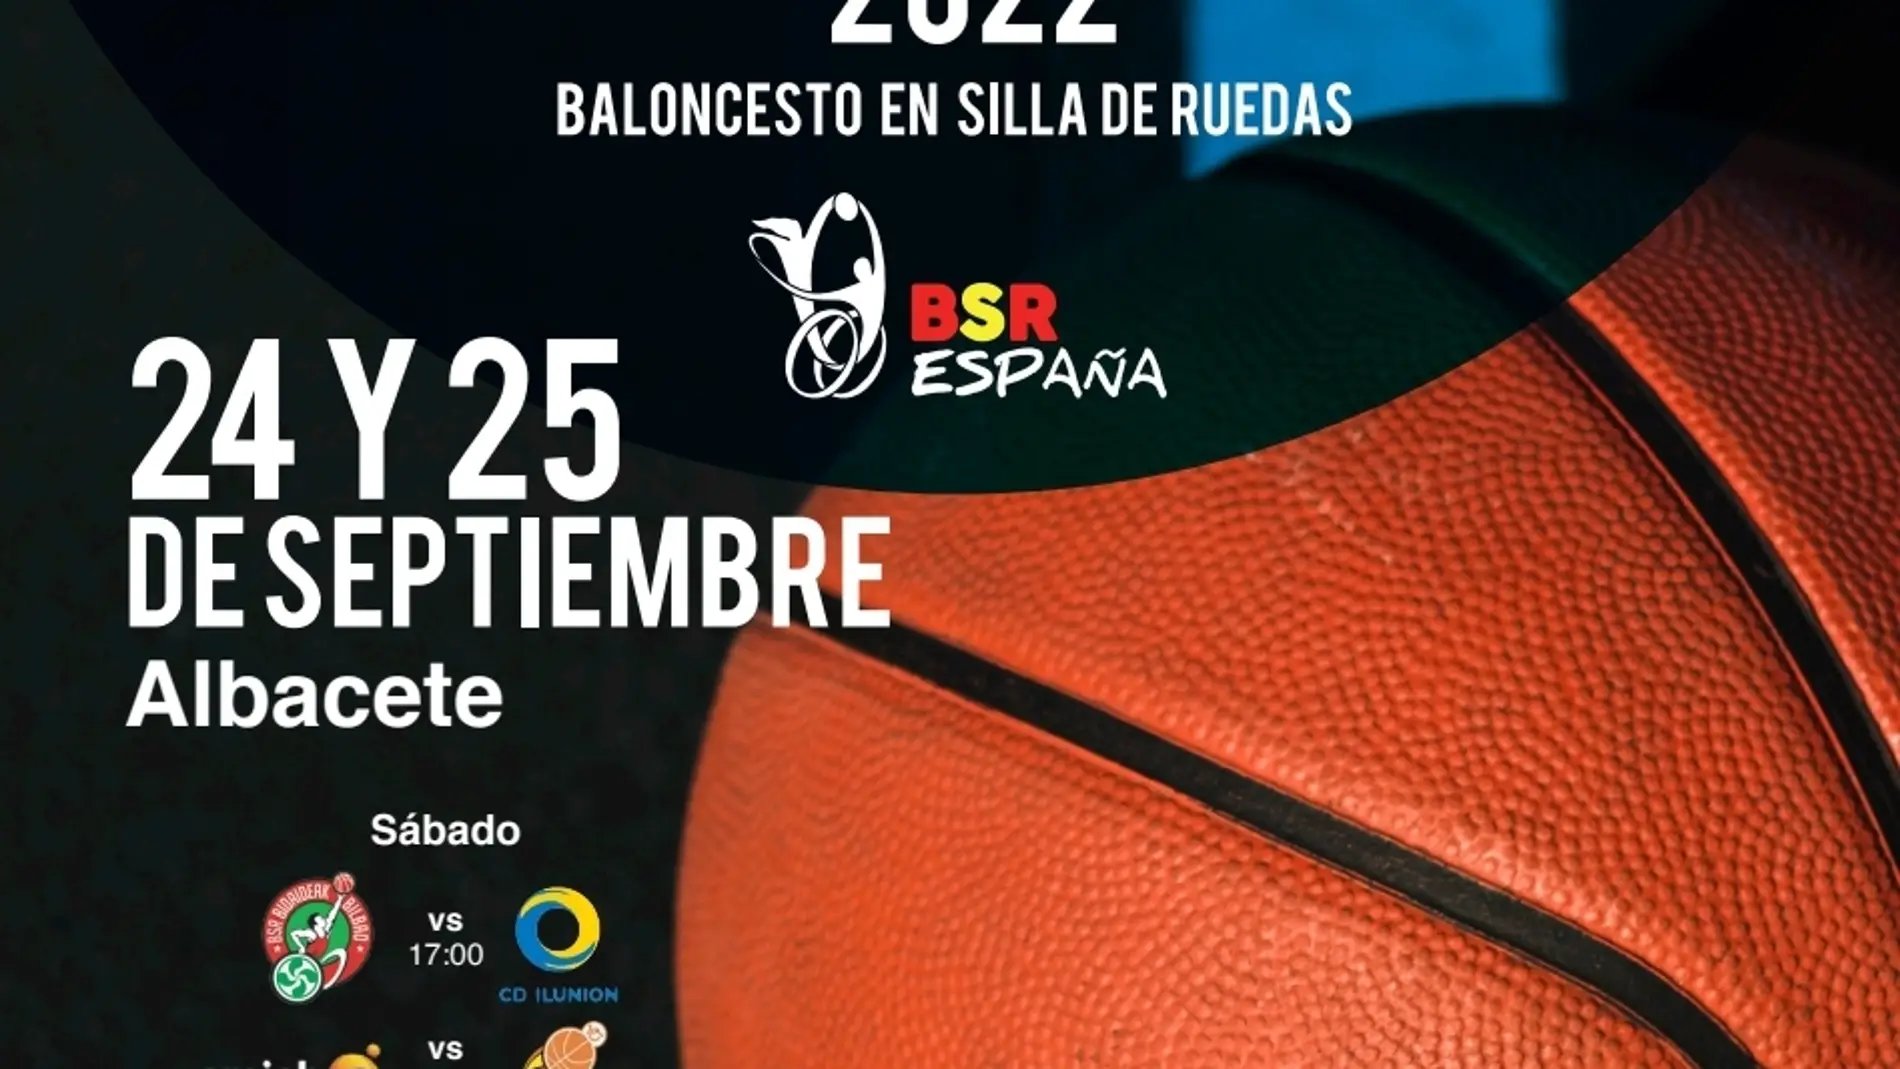 Albacete albergará la I Supercopa de España de baloncesto en silla de ruedas